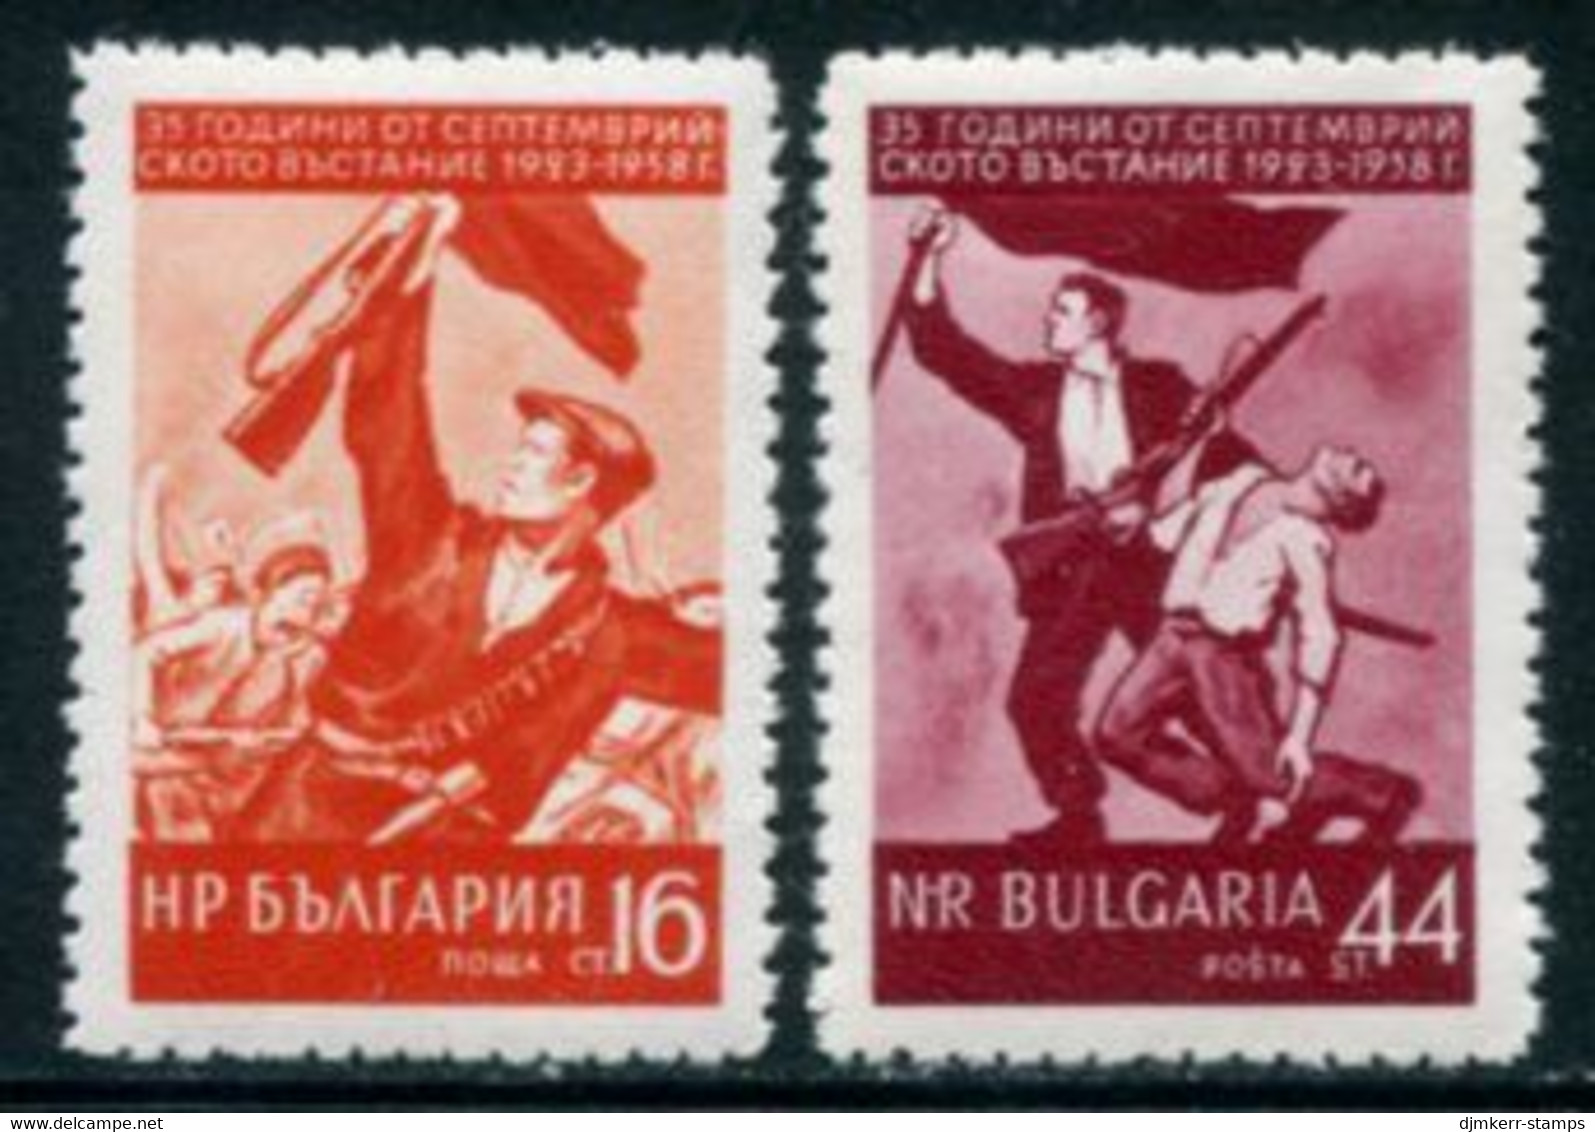 BULGARIA 1958 September Rising Anniversary MNH / **.  Michel 1085-86 - Ungebraucht